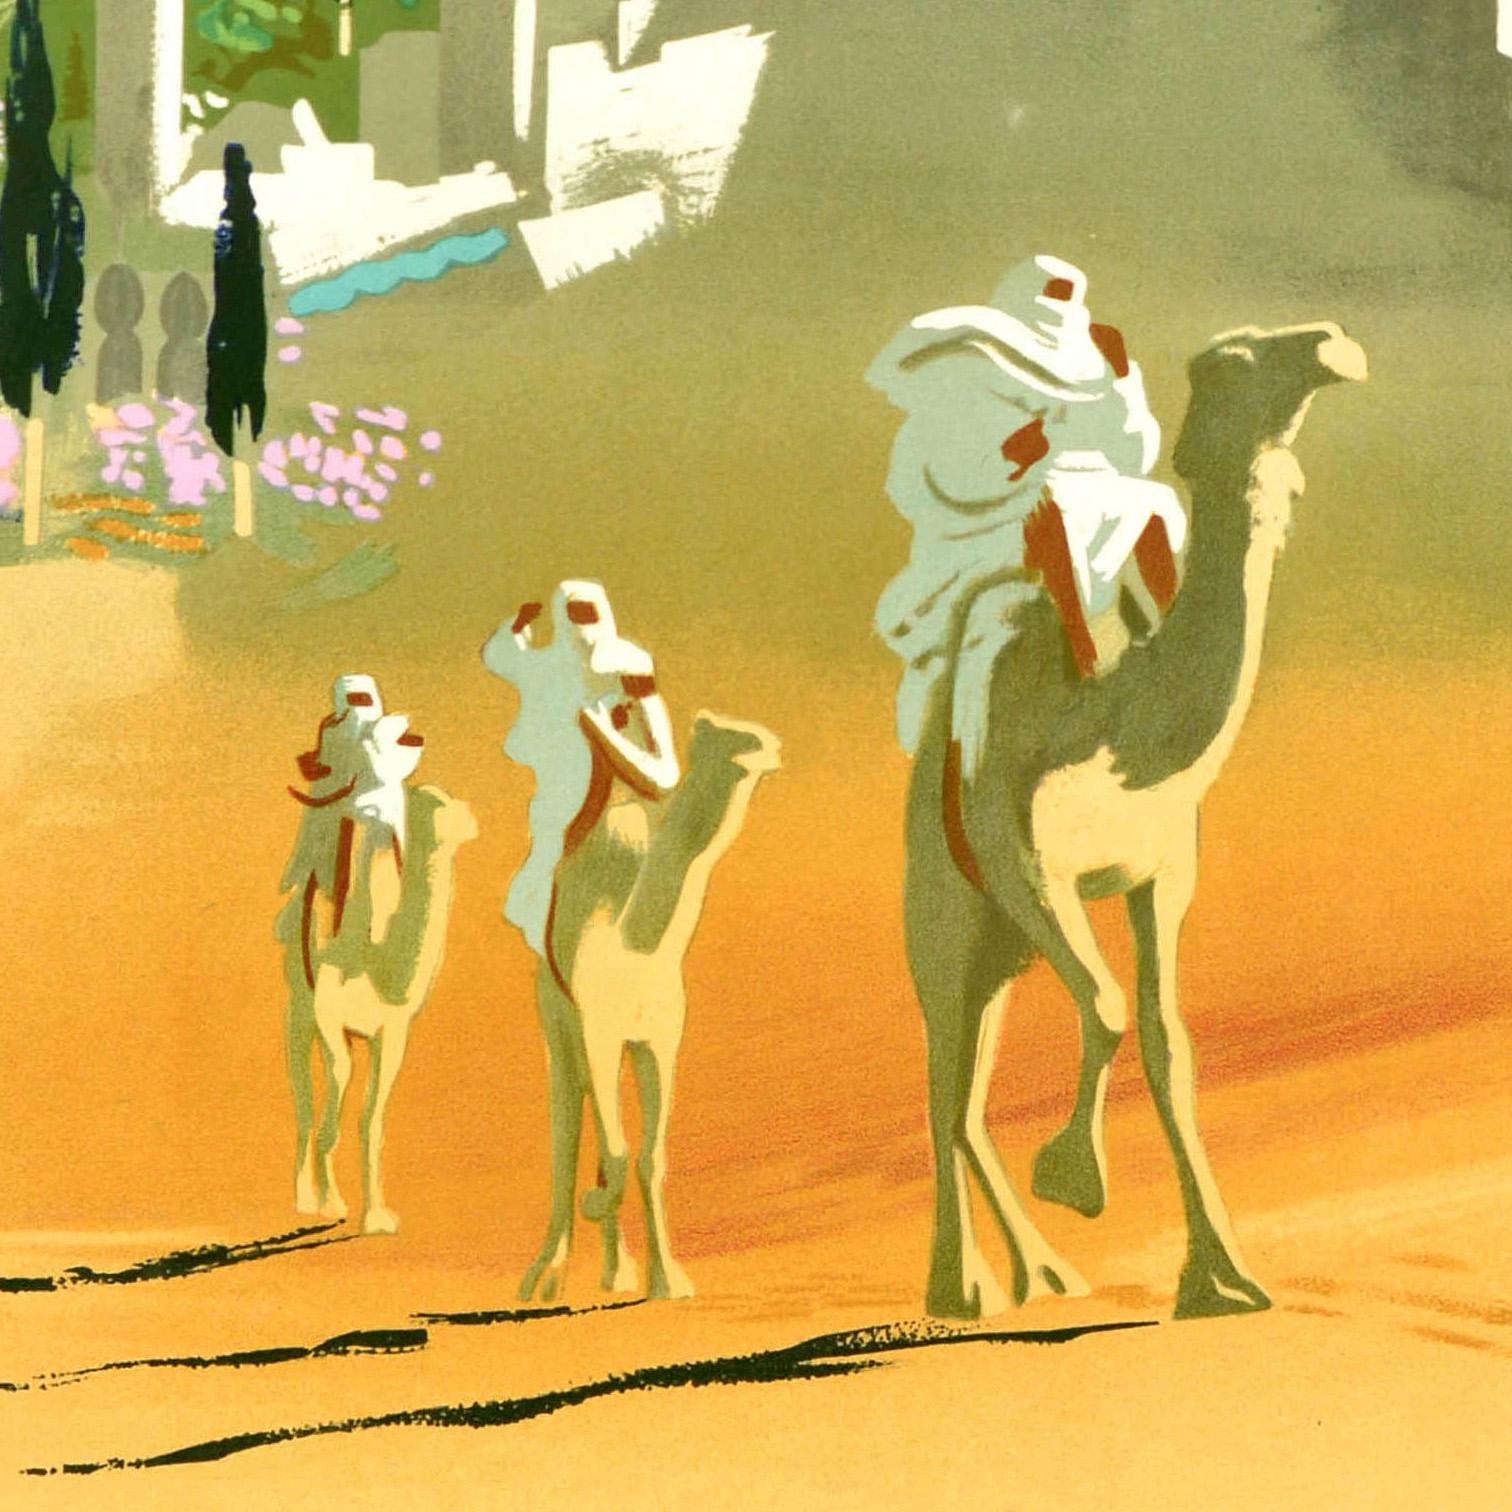 Affiche de voyage originale pour le Moyen-Orient / Proche Orient Air France (Near East) comportant une illustration colorée de l'artiste français Jean Even (1910-1986) représentant des personnes vêtues de blanc à dos de chameau gravissant une